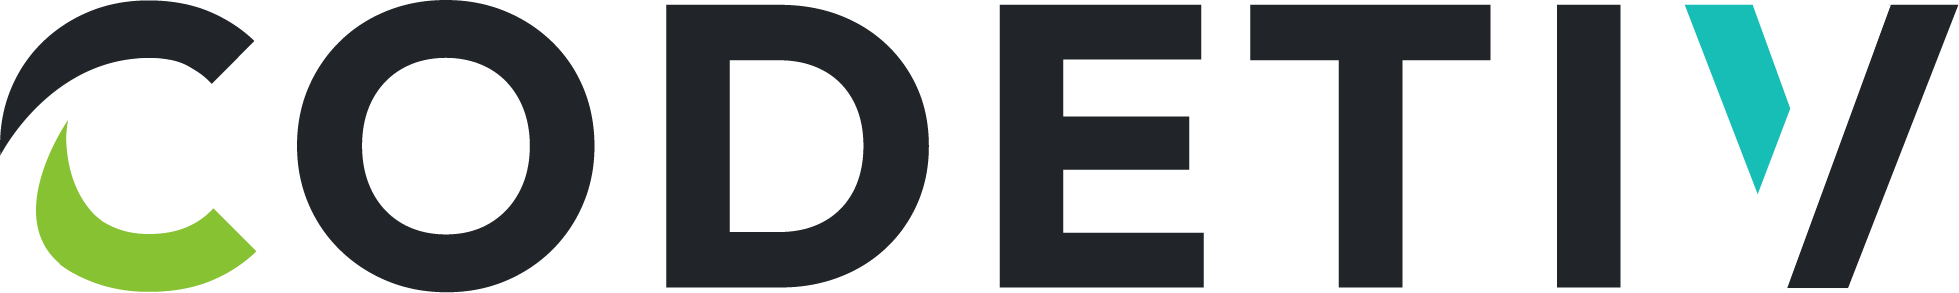 Codetiv Logo